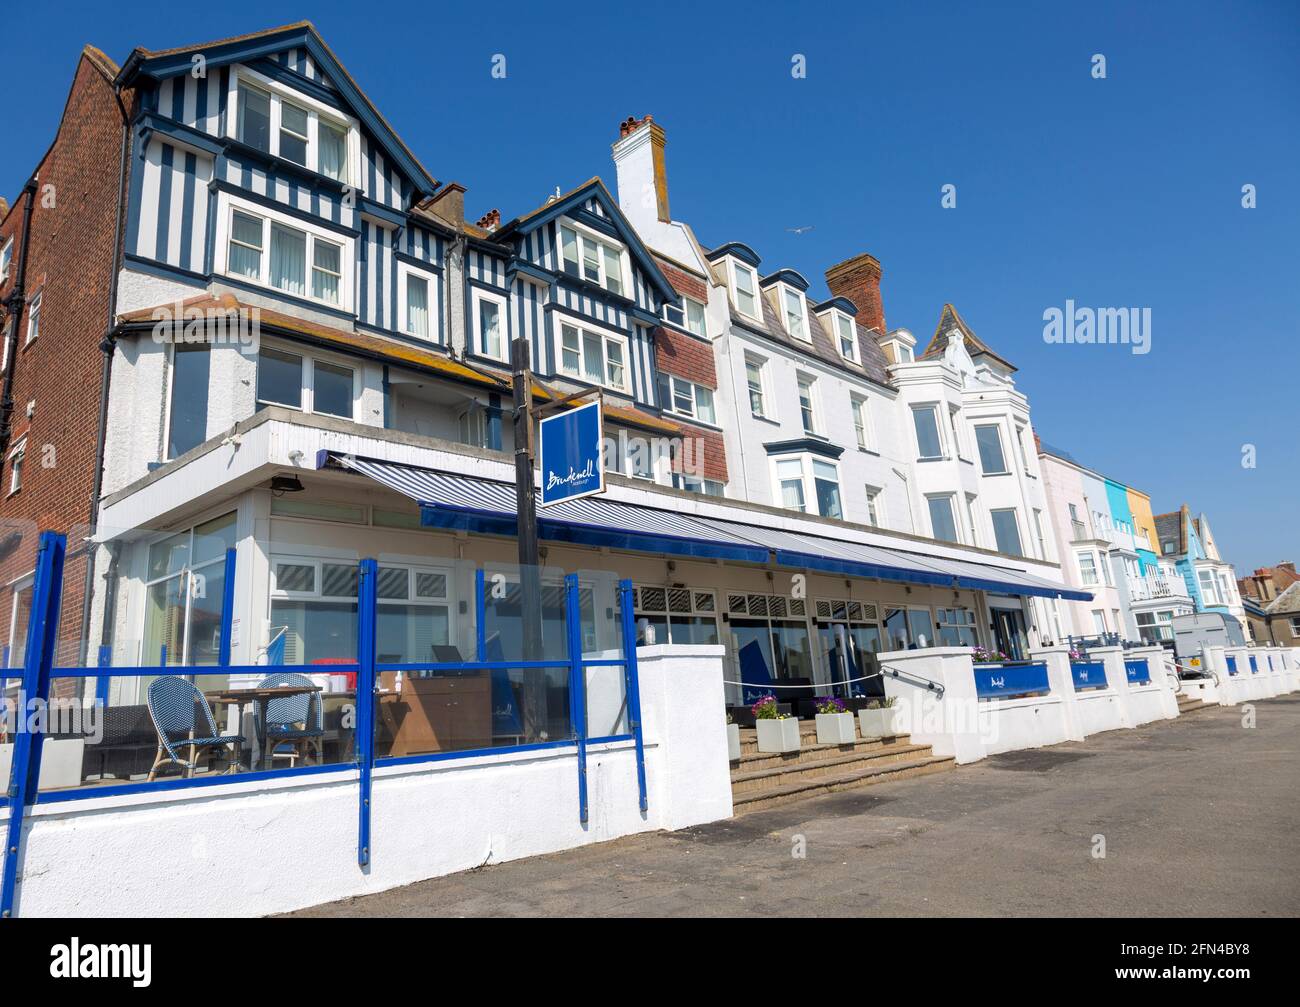 Brudenell Hotel und historische Häuser am Meer, Aldeburgh, Suffolk, England, Großbritannien Stockfoto